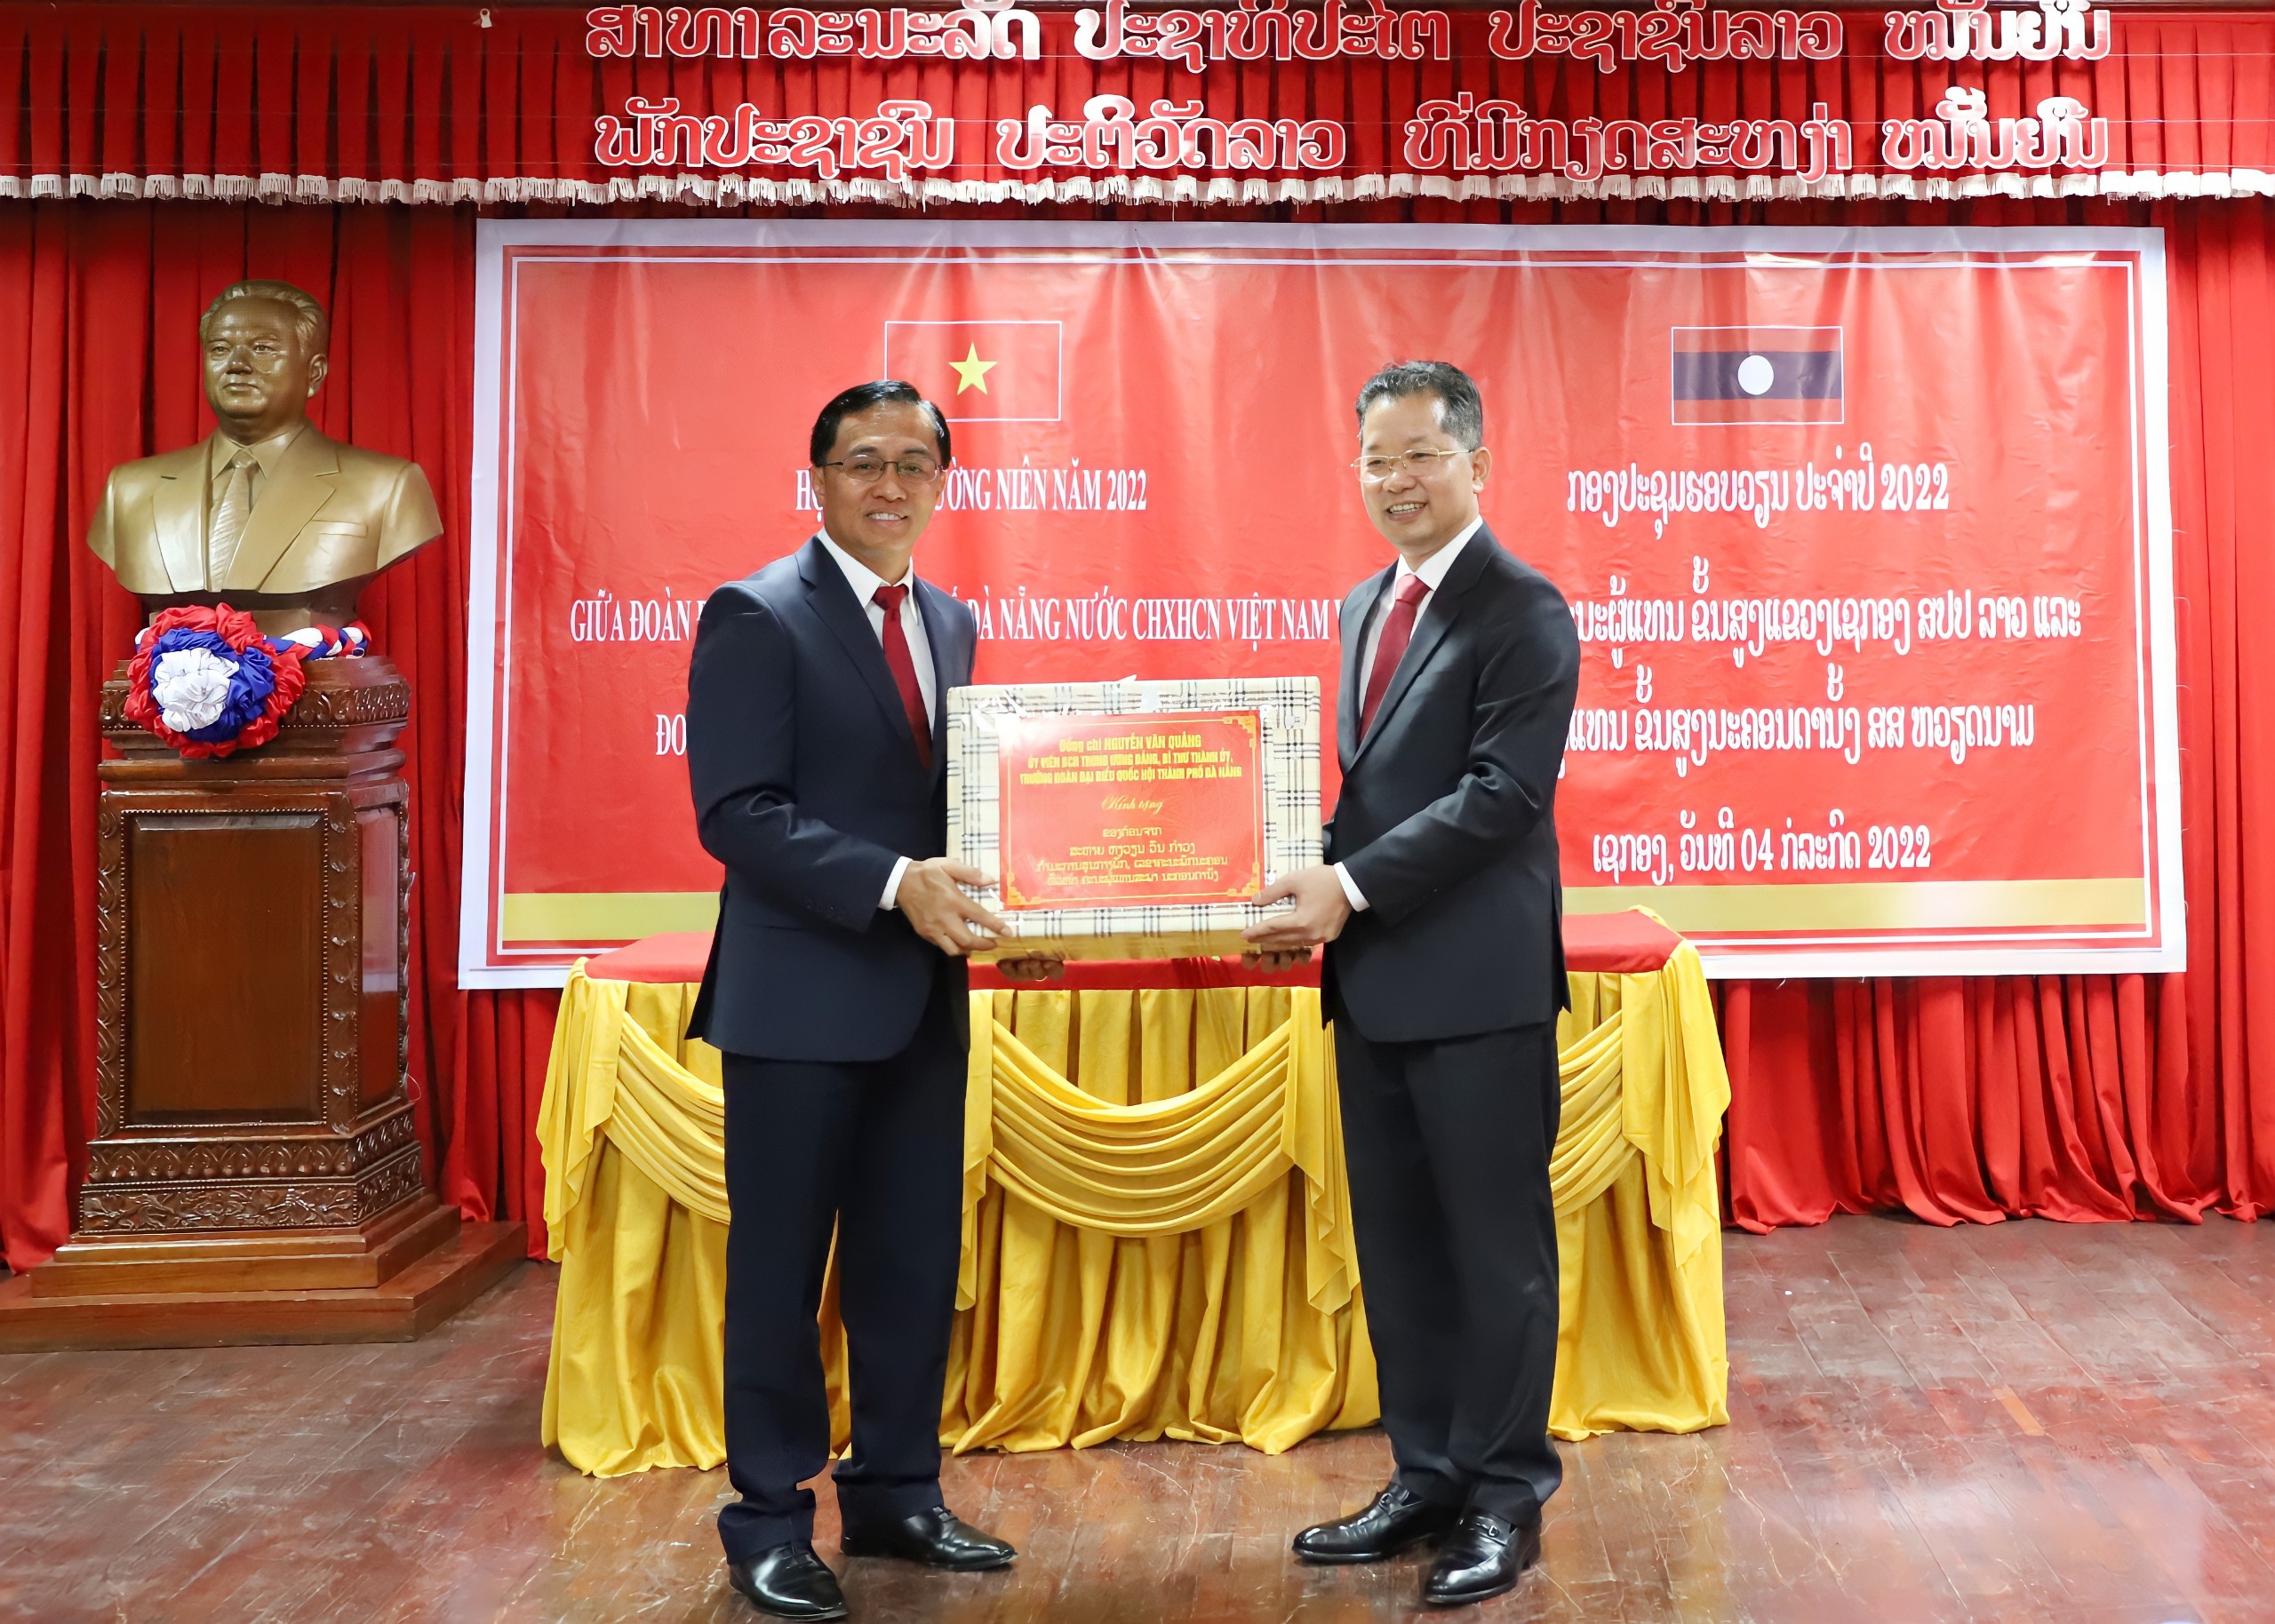 Bí thư Thành ủy Nguyễn Văn Quảng (bên phải) tặng quà cho lãnh đạo tỉnh Sê Kông.  Ảnh: NGỌC PHÚ